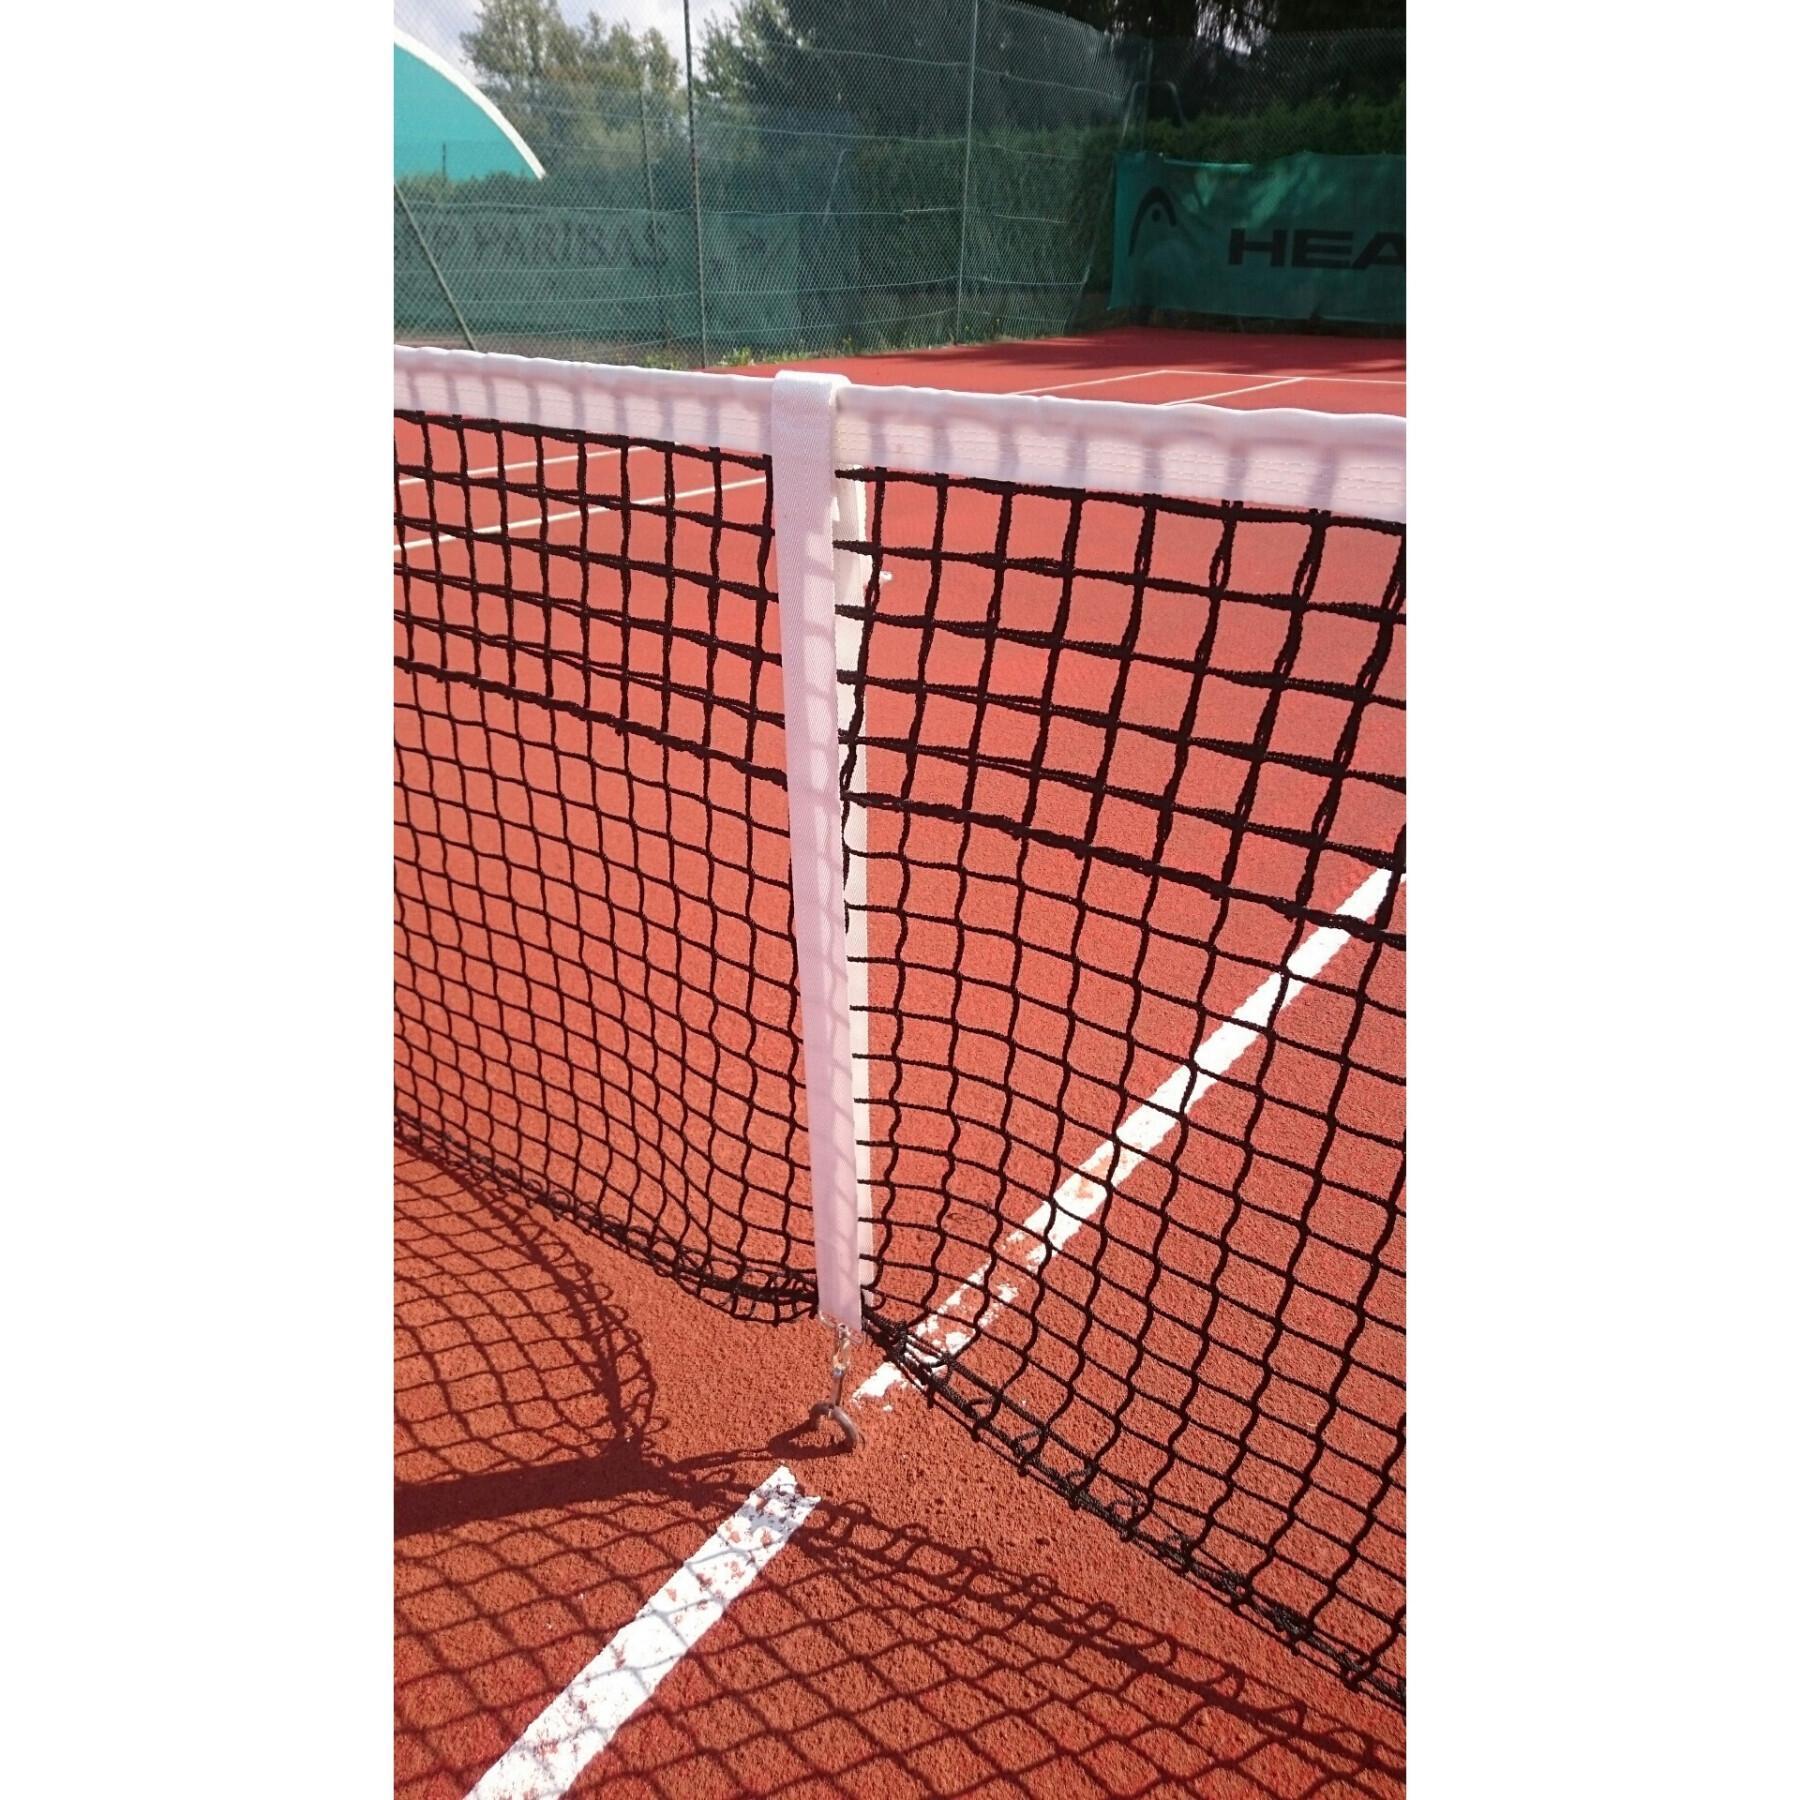 Regulador de rede de ténis com velcro Carrington